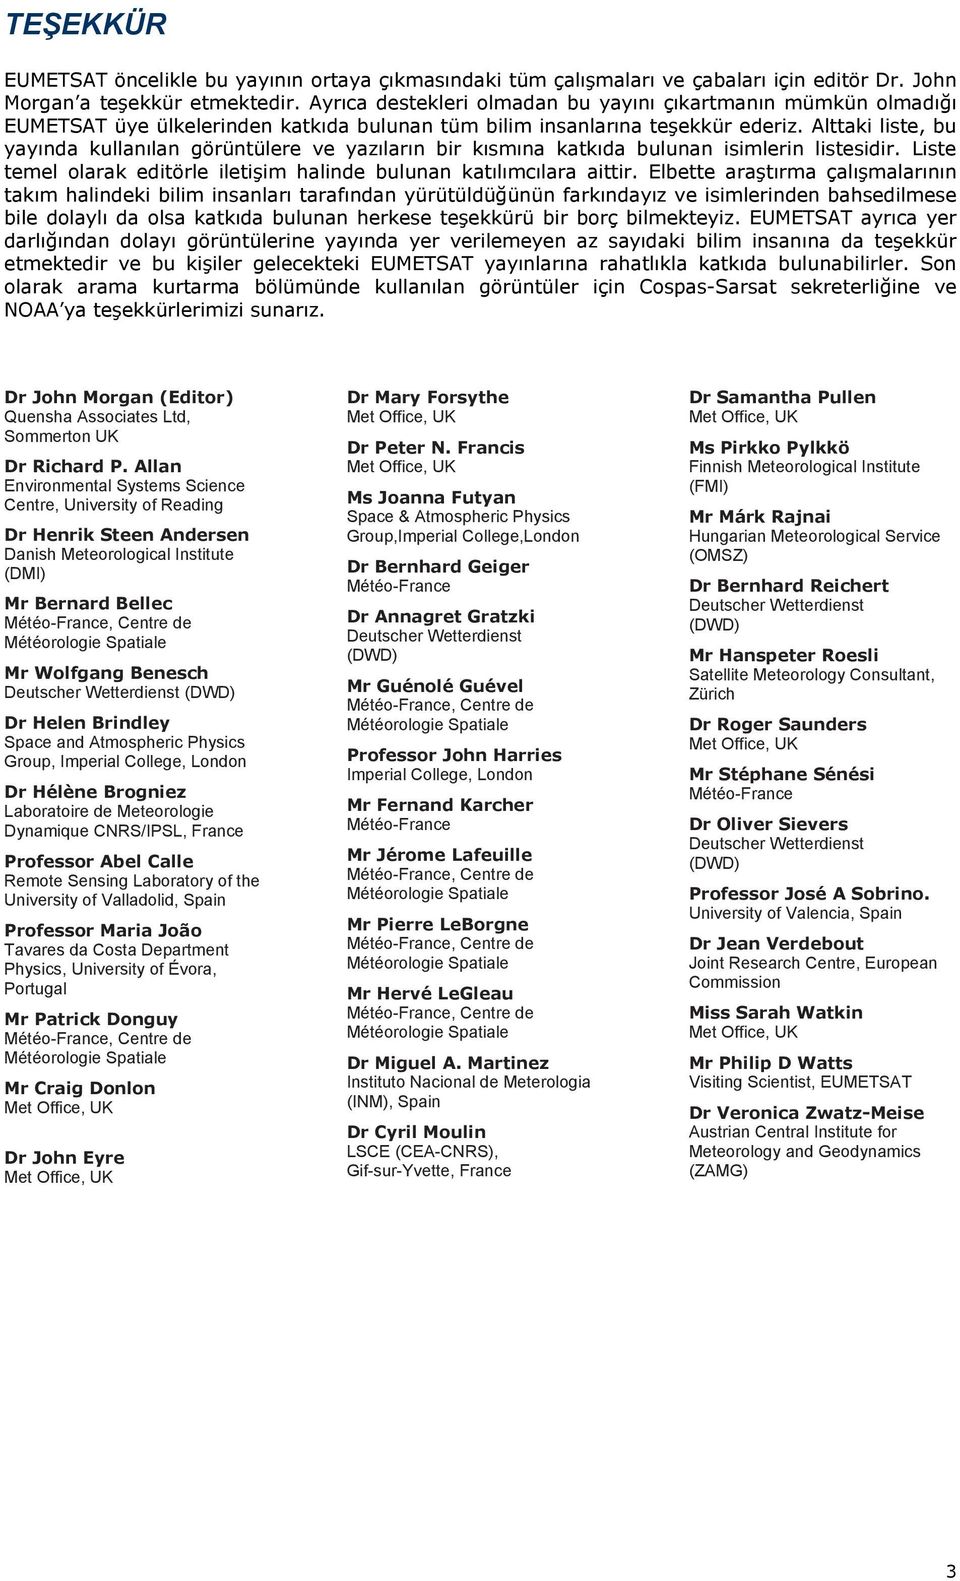 Alttaki liste, bu yayında kullanılan görüntülere ve yazıların bir kısmına katkıda bulunan isimlerin listesidir. Liste temel olarak editörle iletişim halinde bulunan katılımcılara aittir.